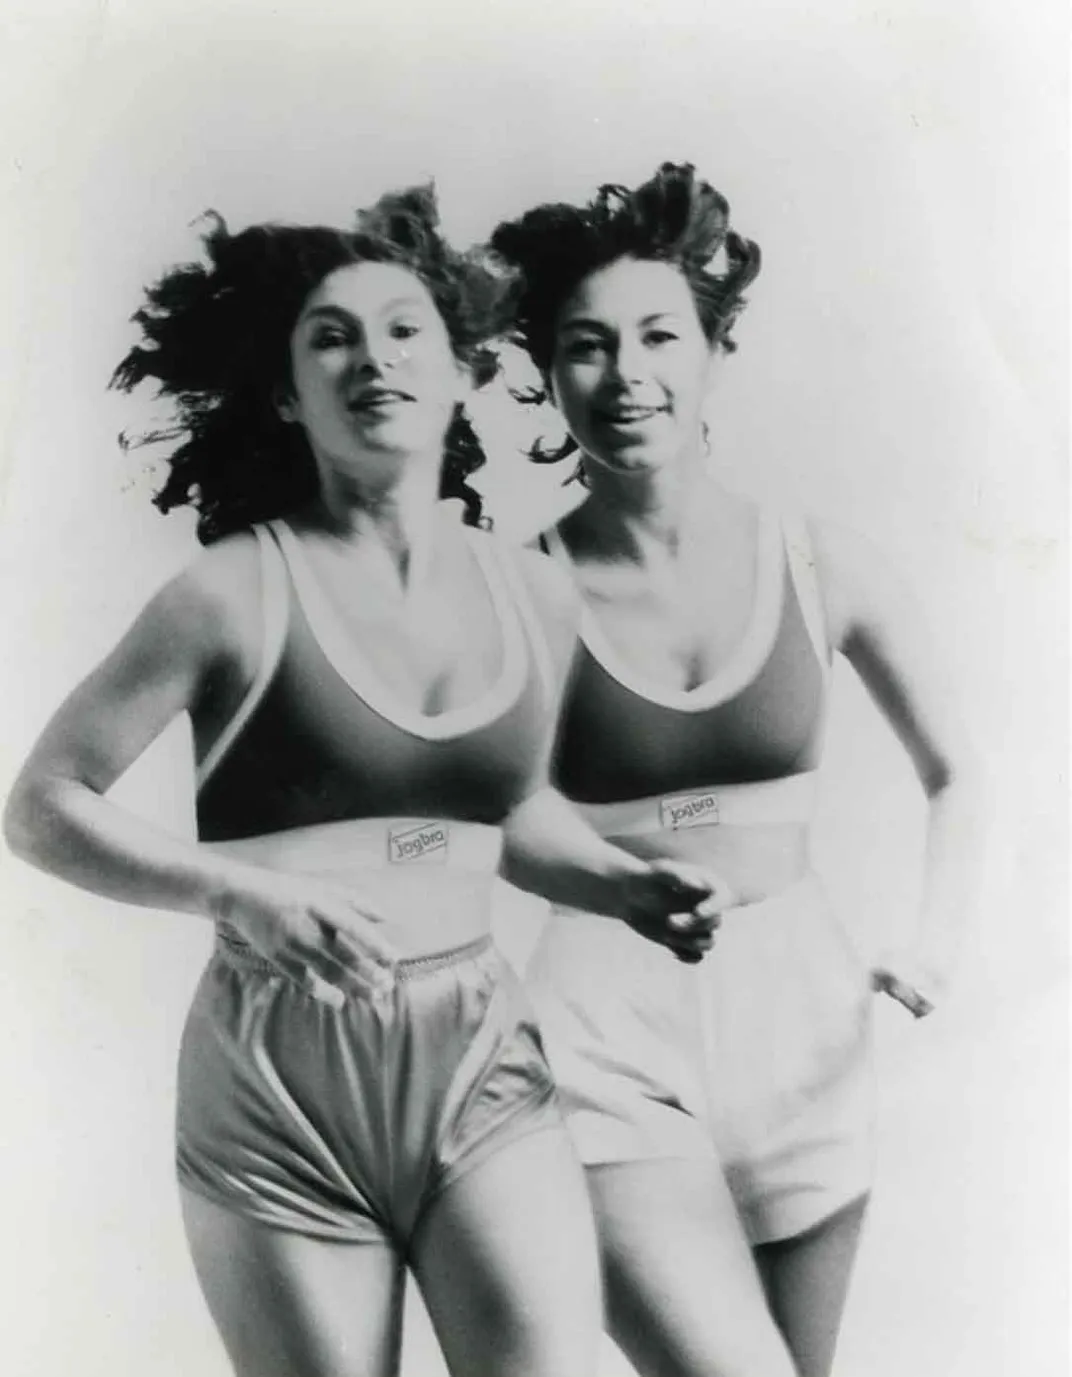 Two women running 1970s